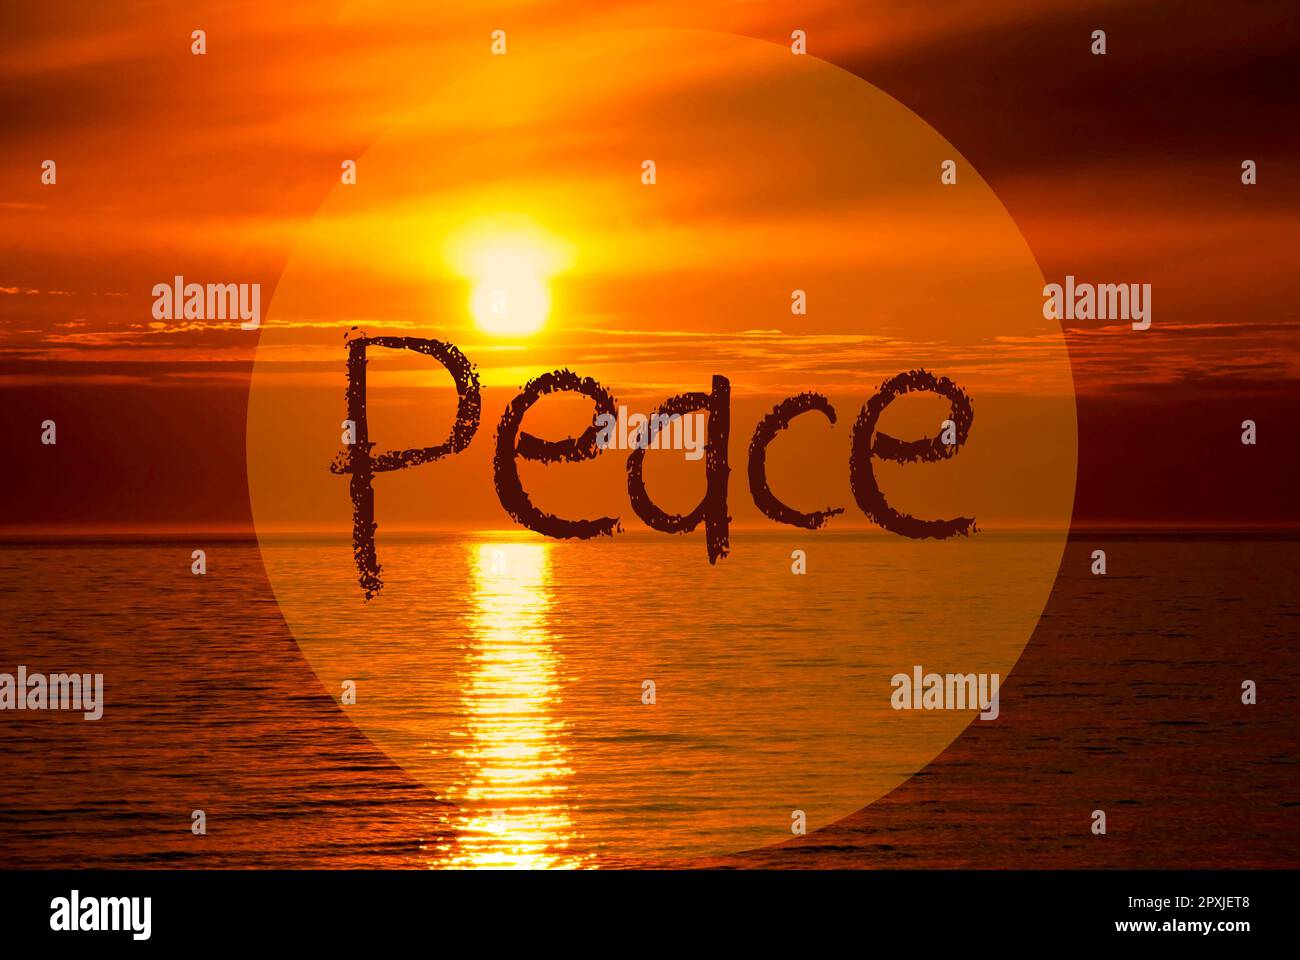 Englischer Text Peace. Romantischer Sonnenuntergang Oder Sonnenaufgang Am Meer Oder Ozean Im Hintergrund Stockfoto